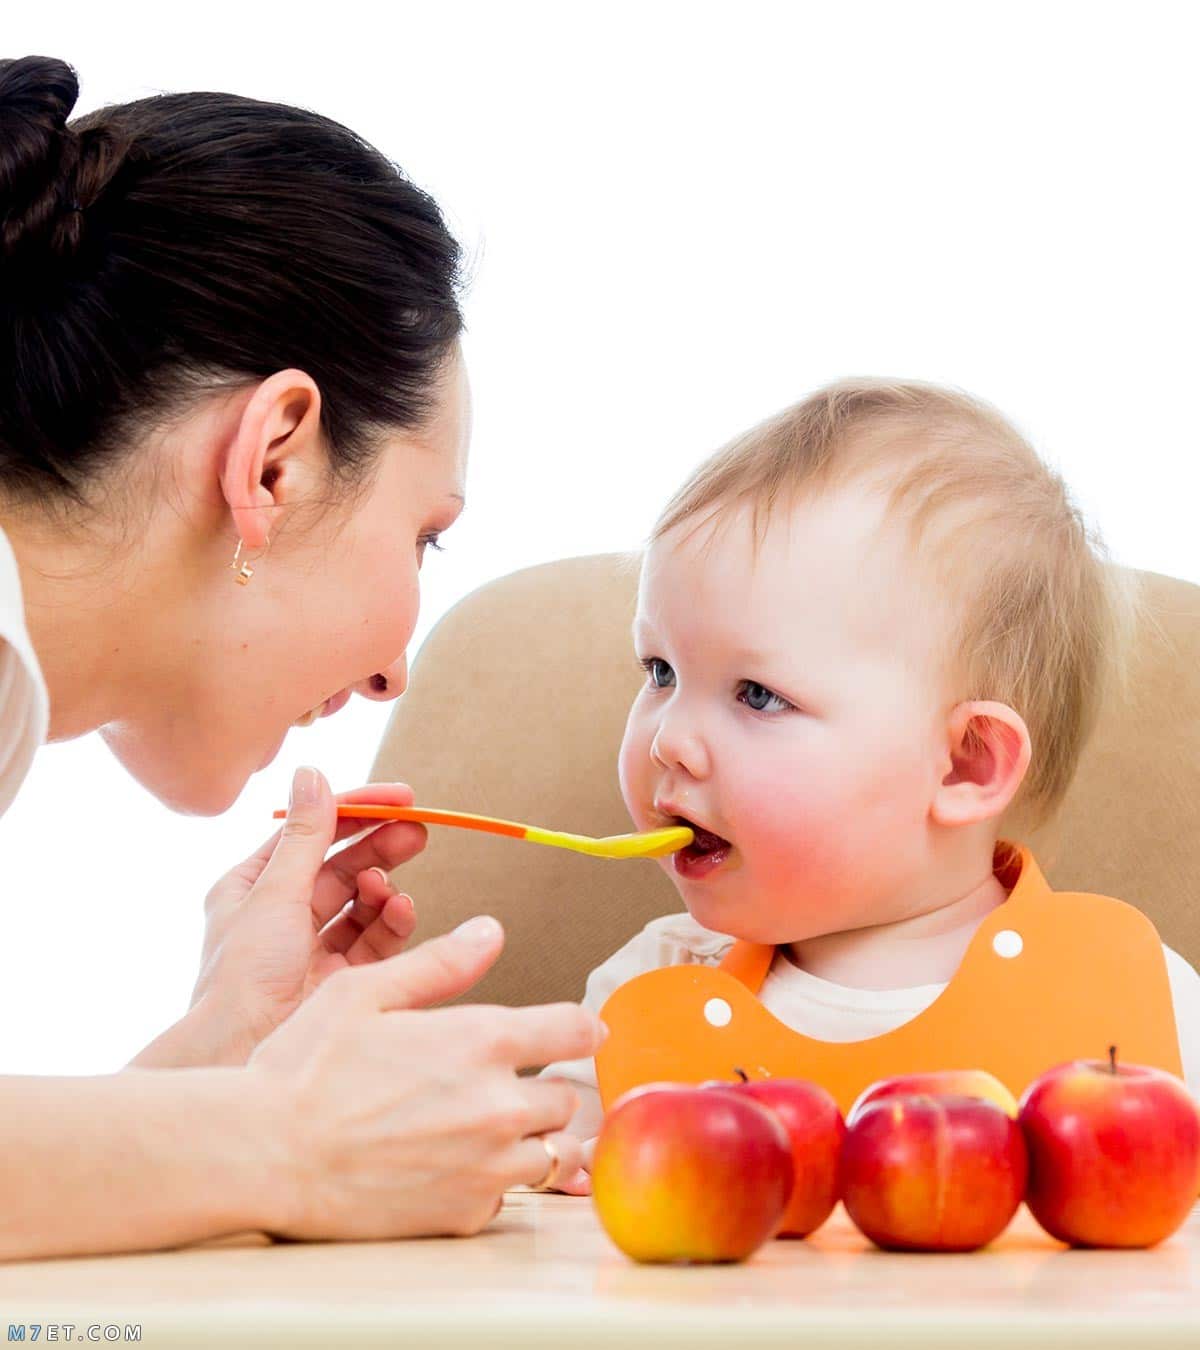 فوائد التفاح للاطفال  